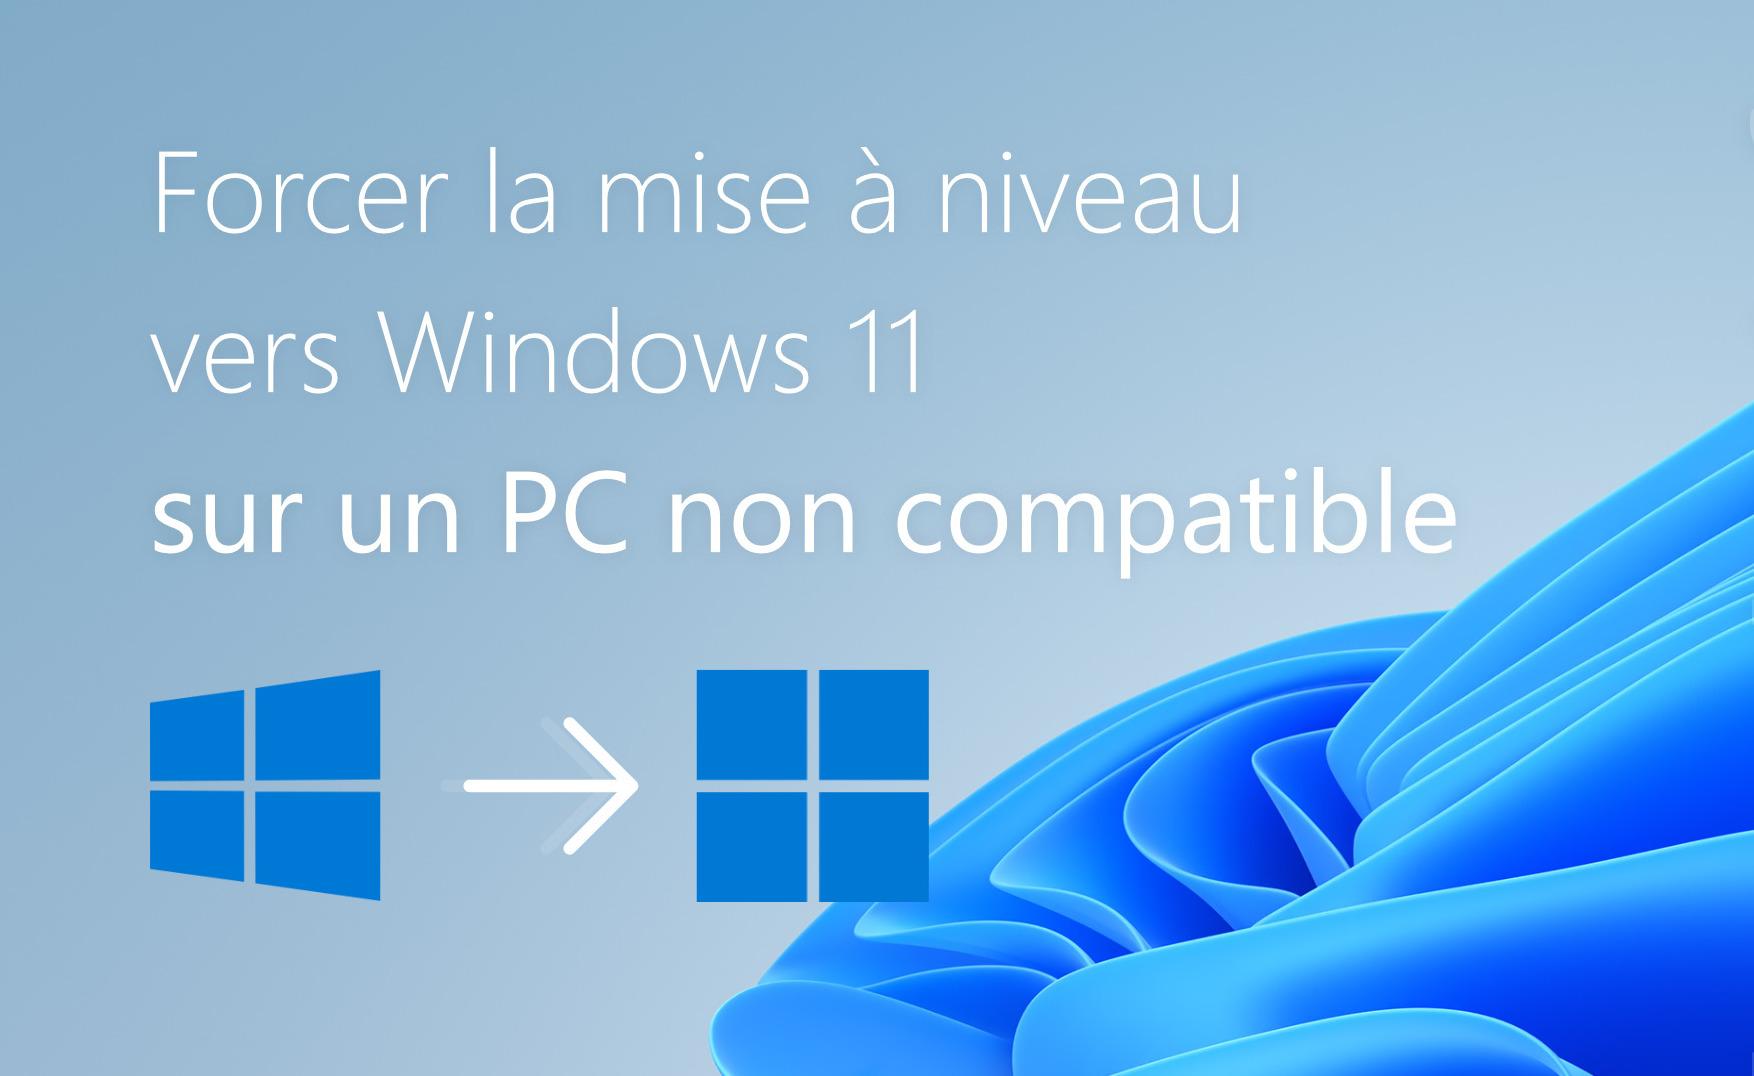 Forcer la mise a niveau vers windows 11 sur un pc non compatible 615c4f33c517a